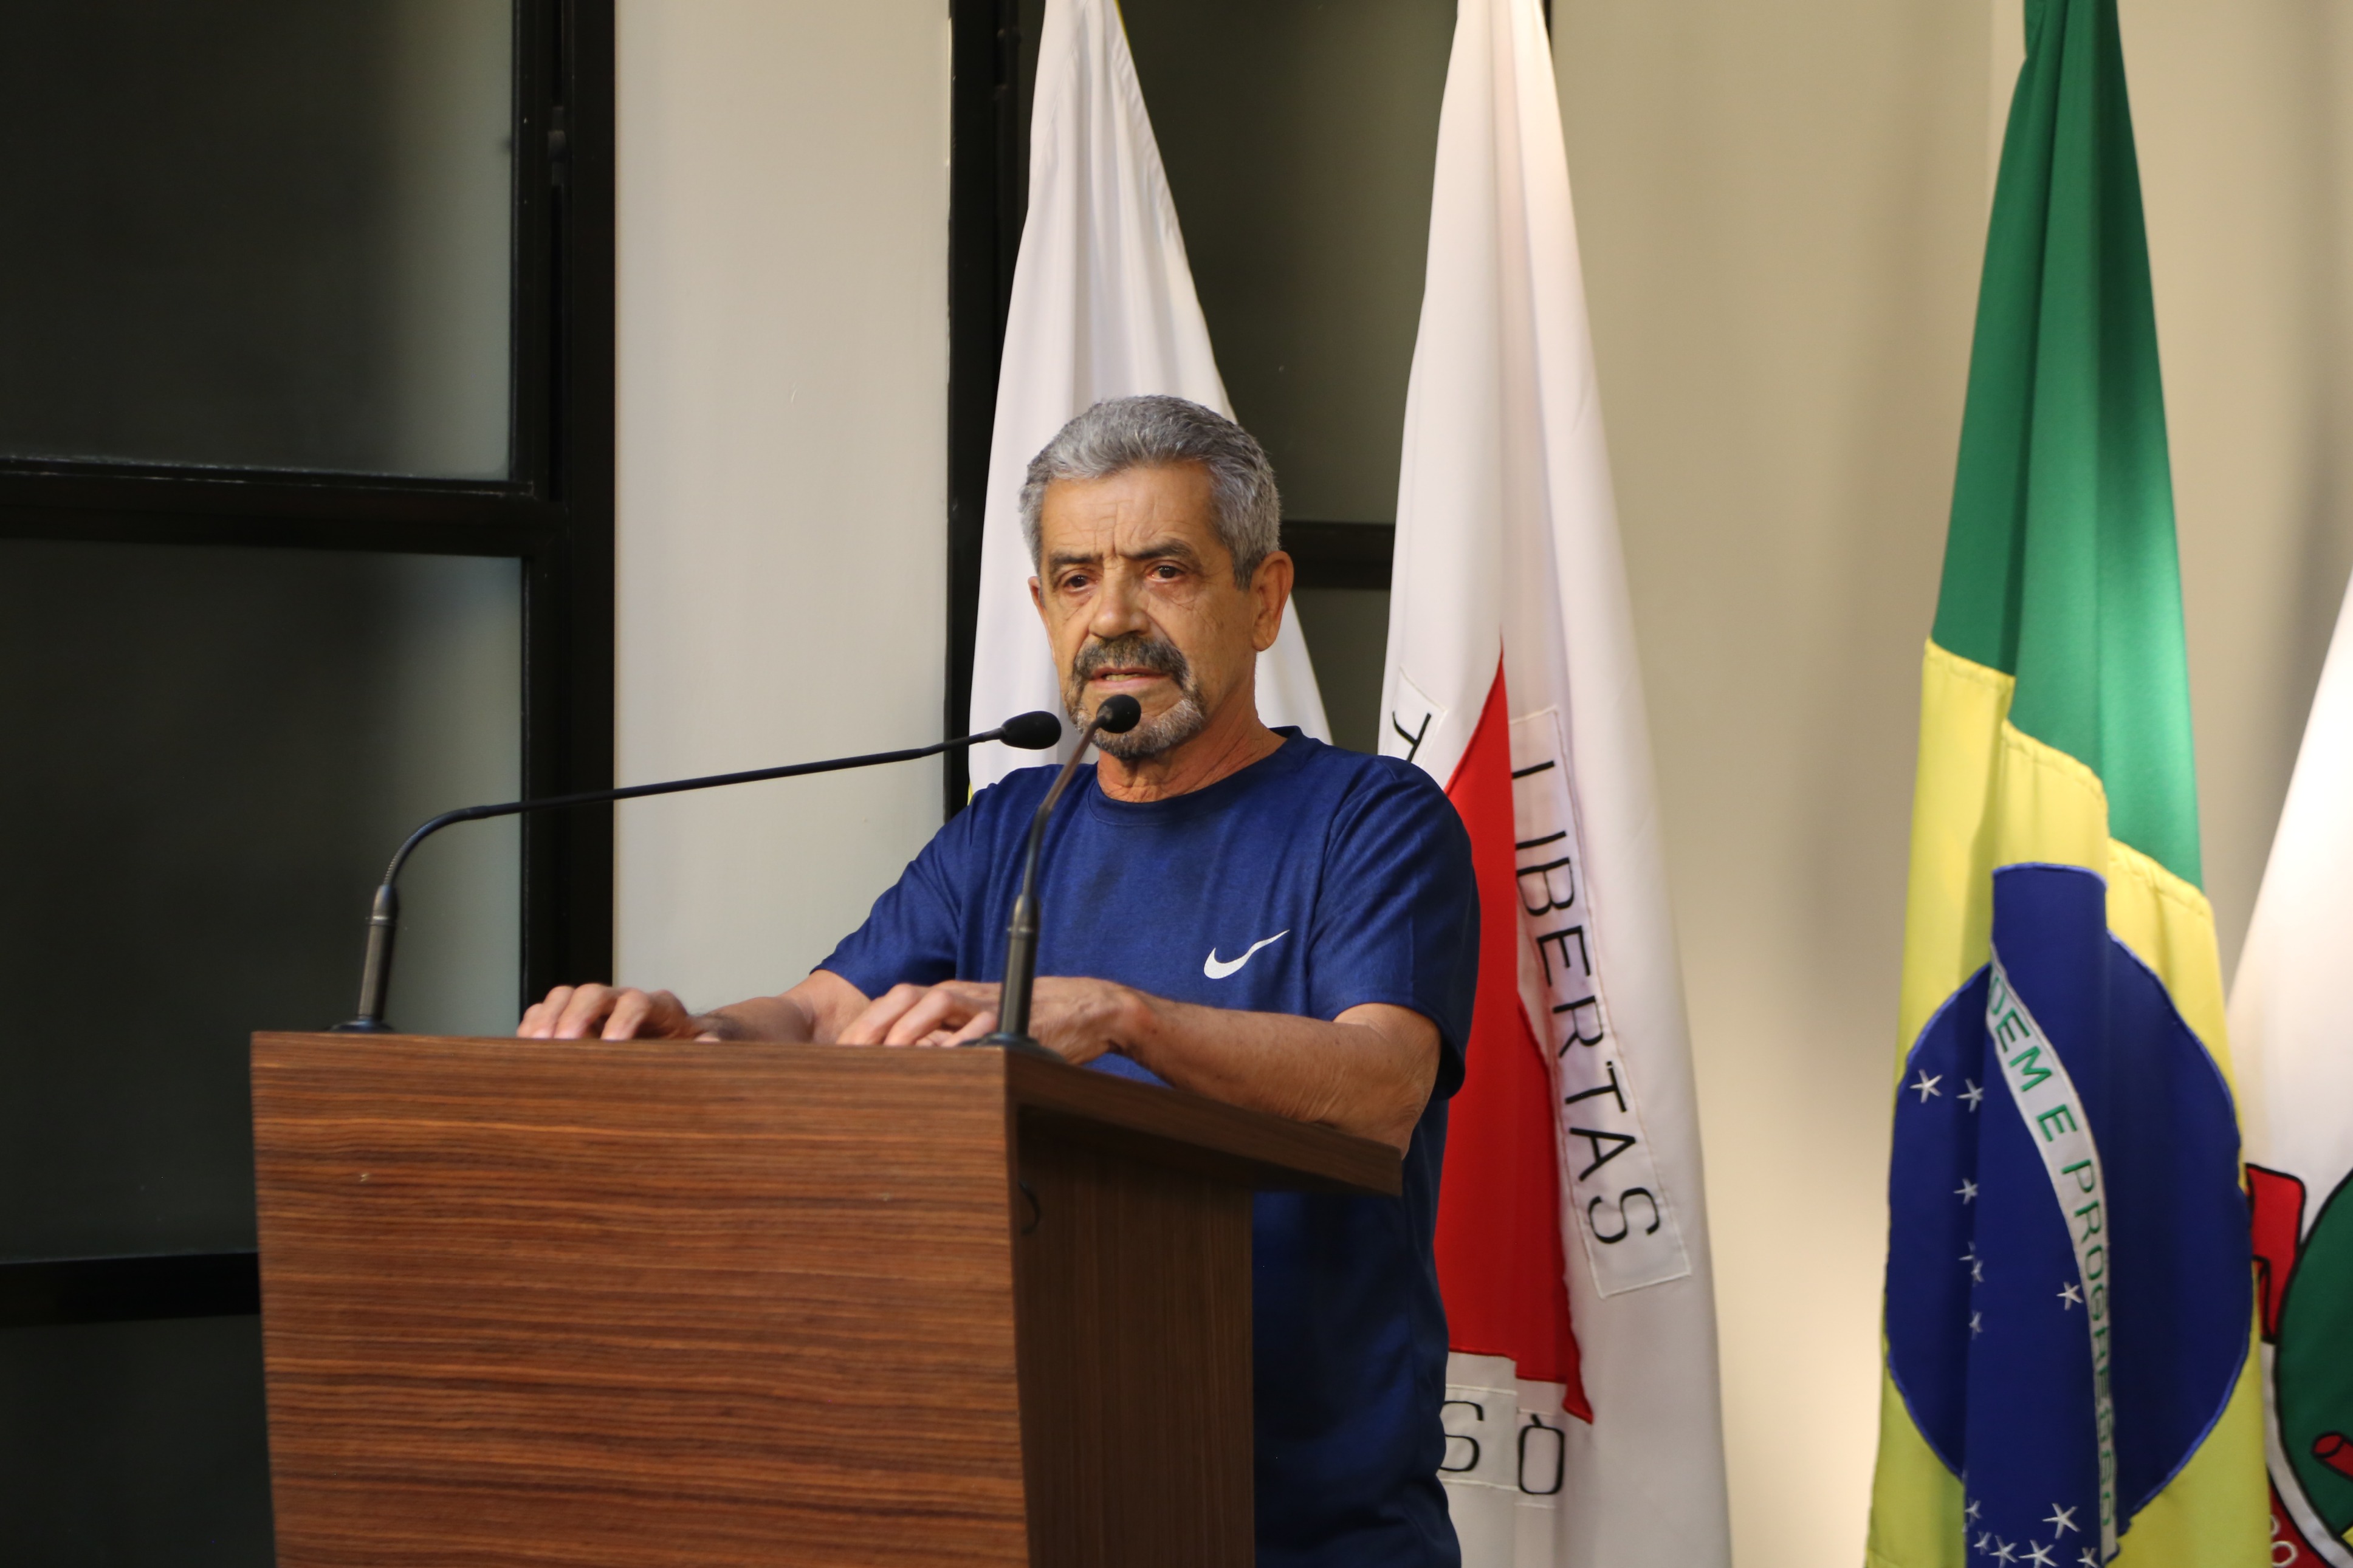 Vereador João Januário (João de Josino) (CIDADANIA), Presidente da Comissão de Obras e Serviços Públicos